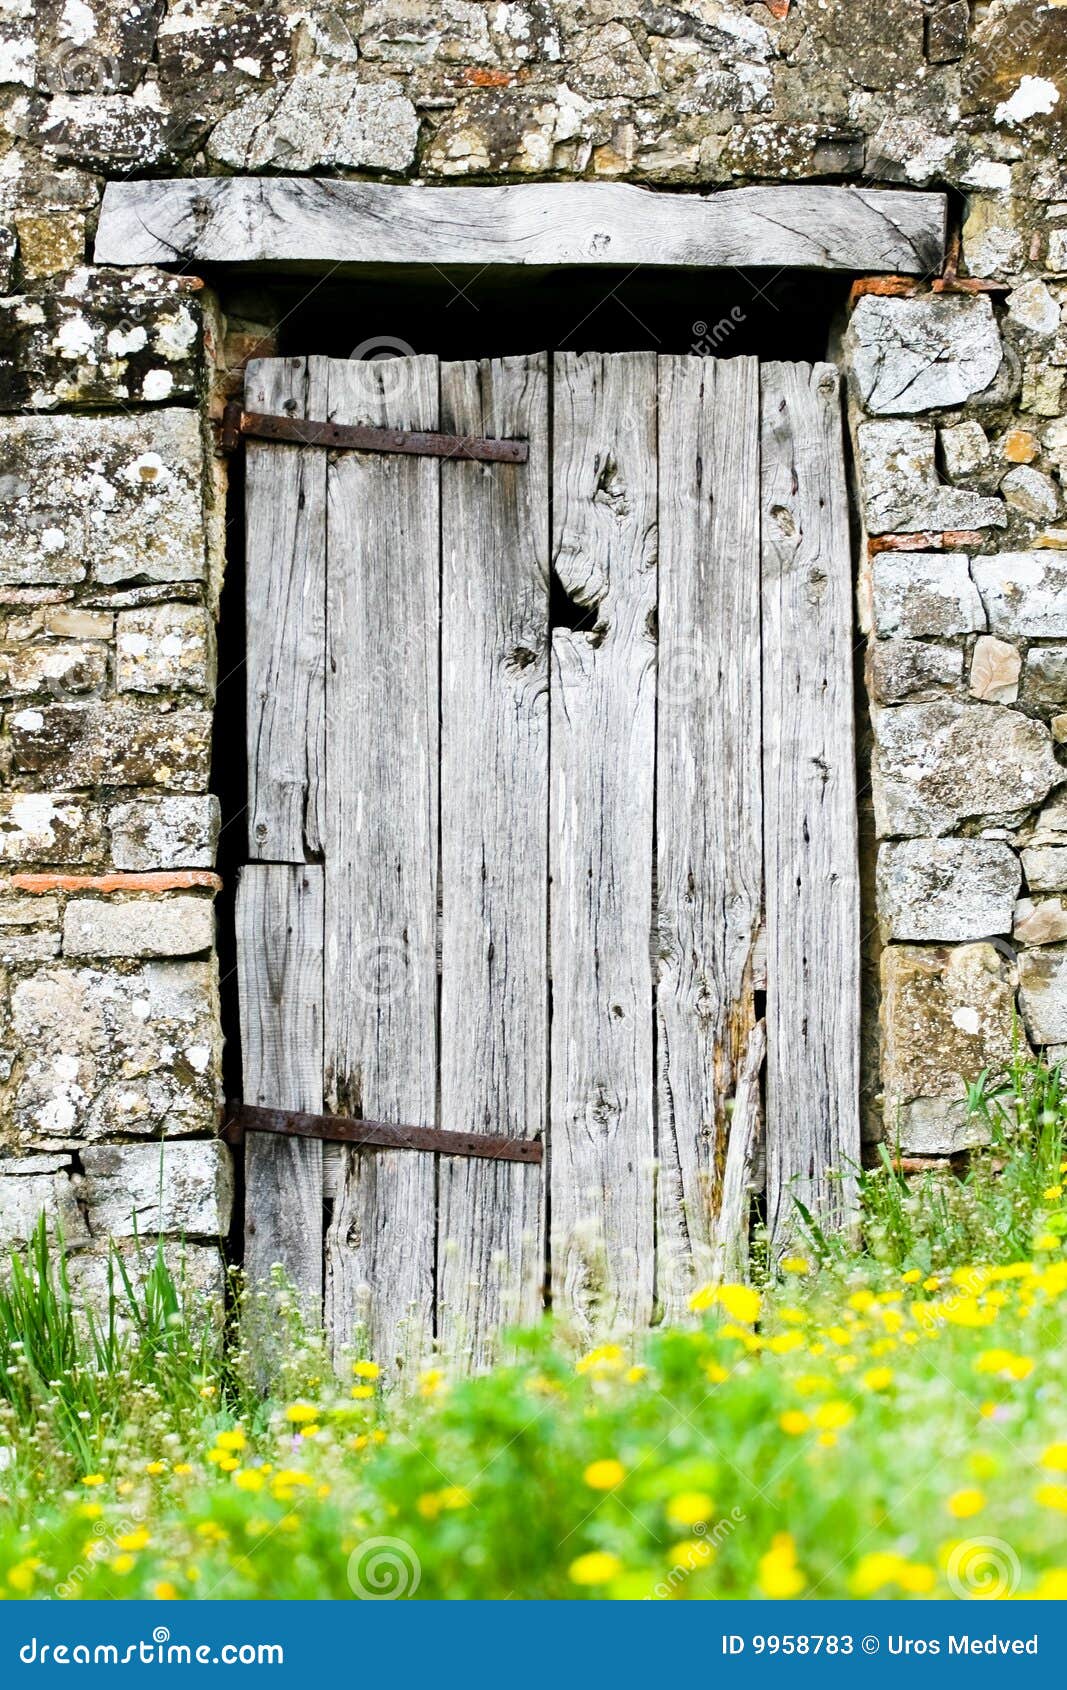 old wooden door 9958783